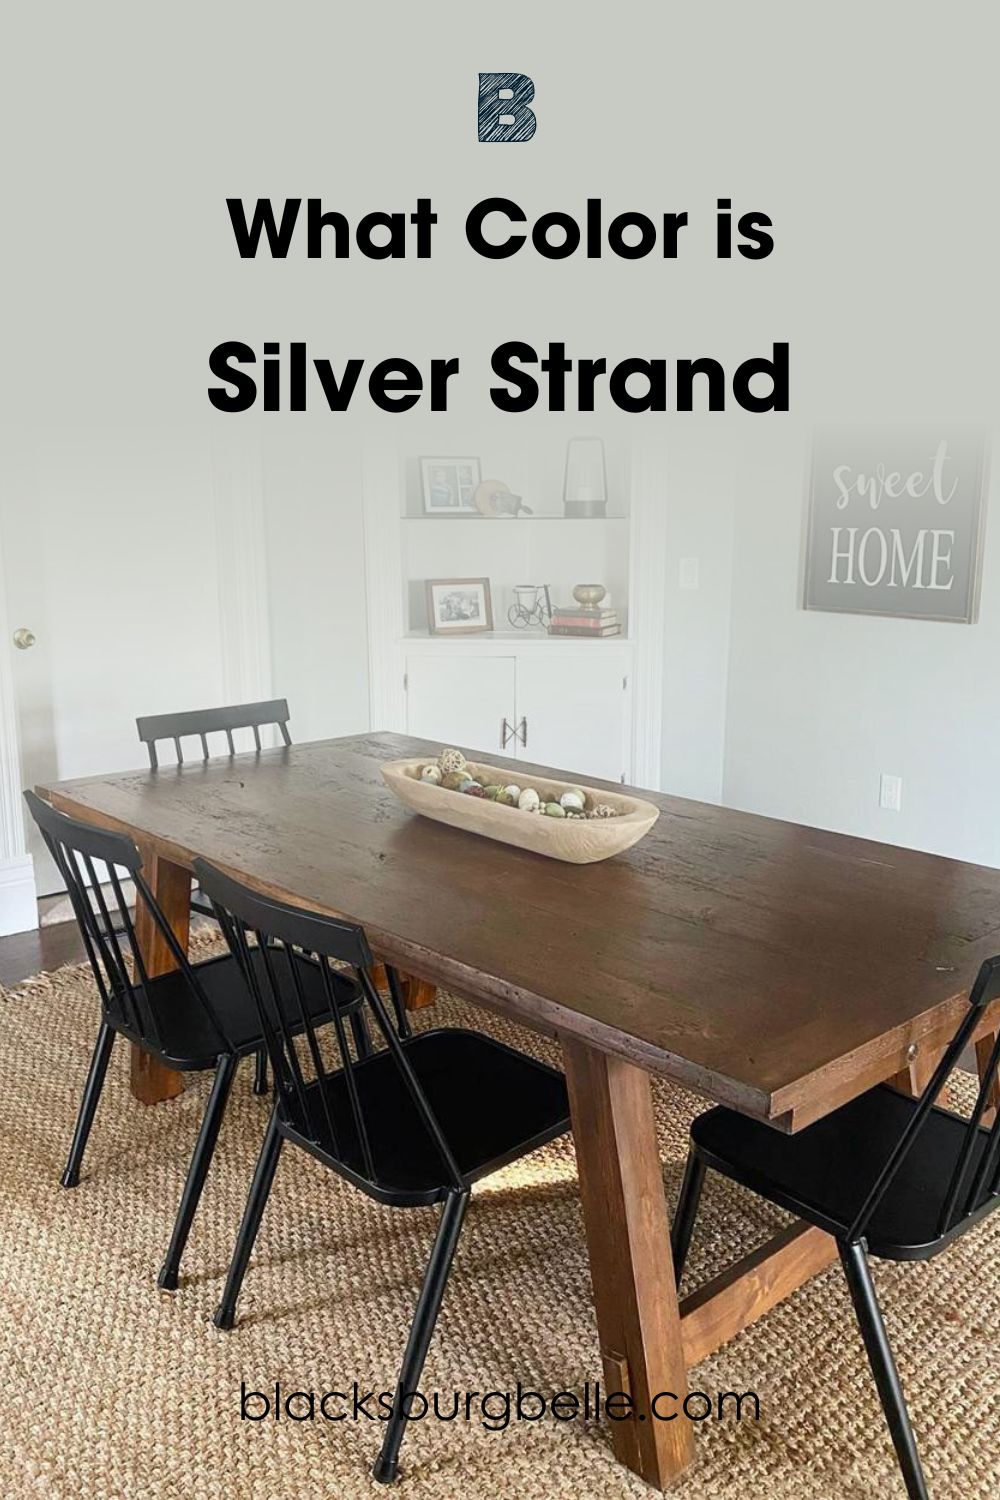 A Visual Comparison of Silver Strand